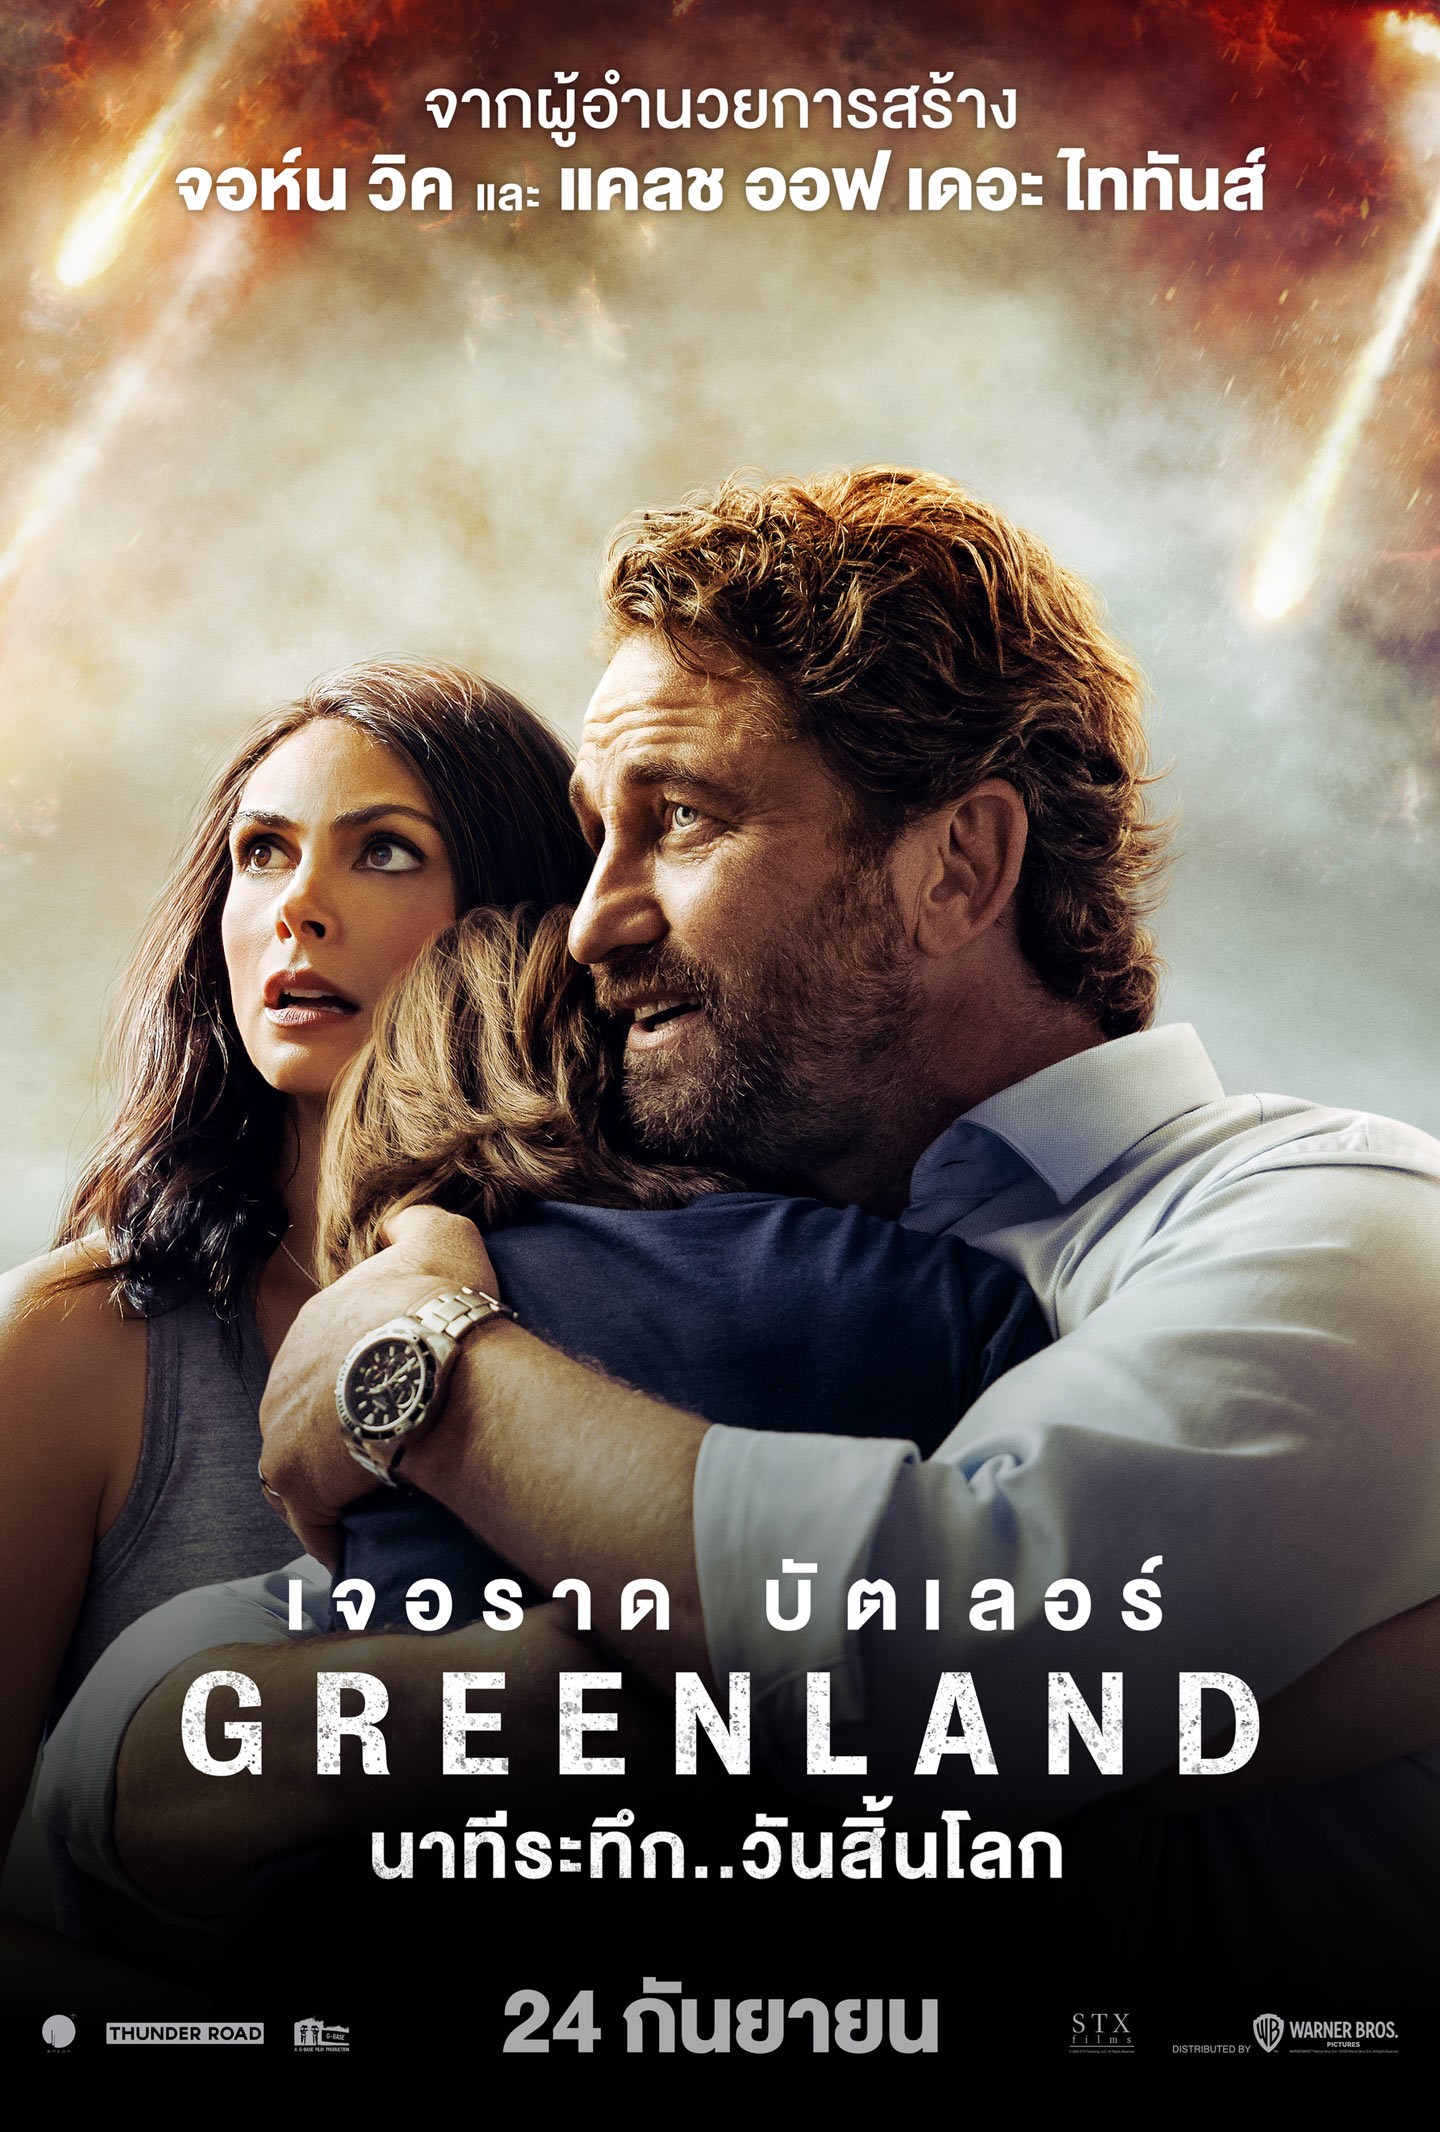 ดูหนัง Greenland นาทีระทึก วันสิ้นโลก เต็มเรื่อง พากย์ไทย